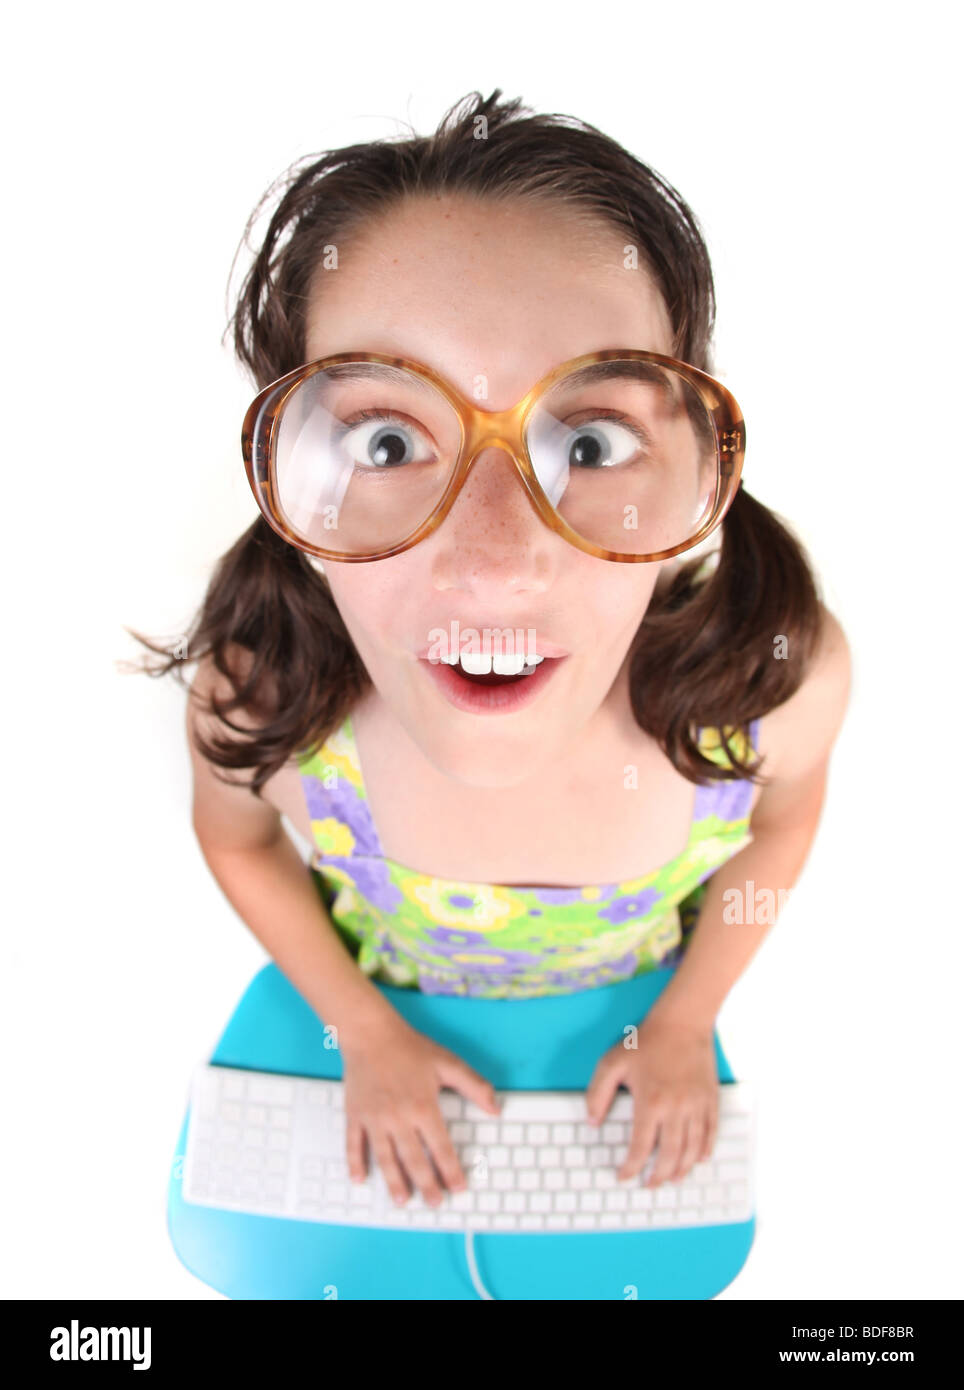 Lustiges kleines Kind arbeiten auf einer Computertastatur nachschlagen. Fisheye-Objektiv-Effekt. Stockfoto